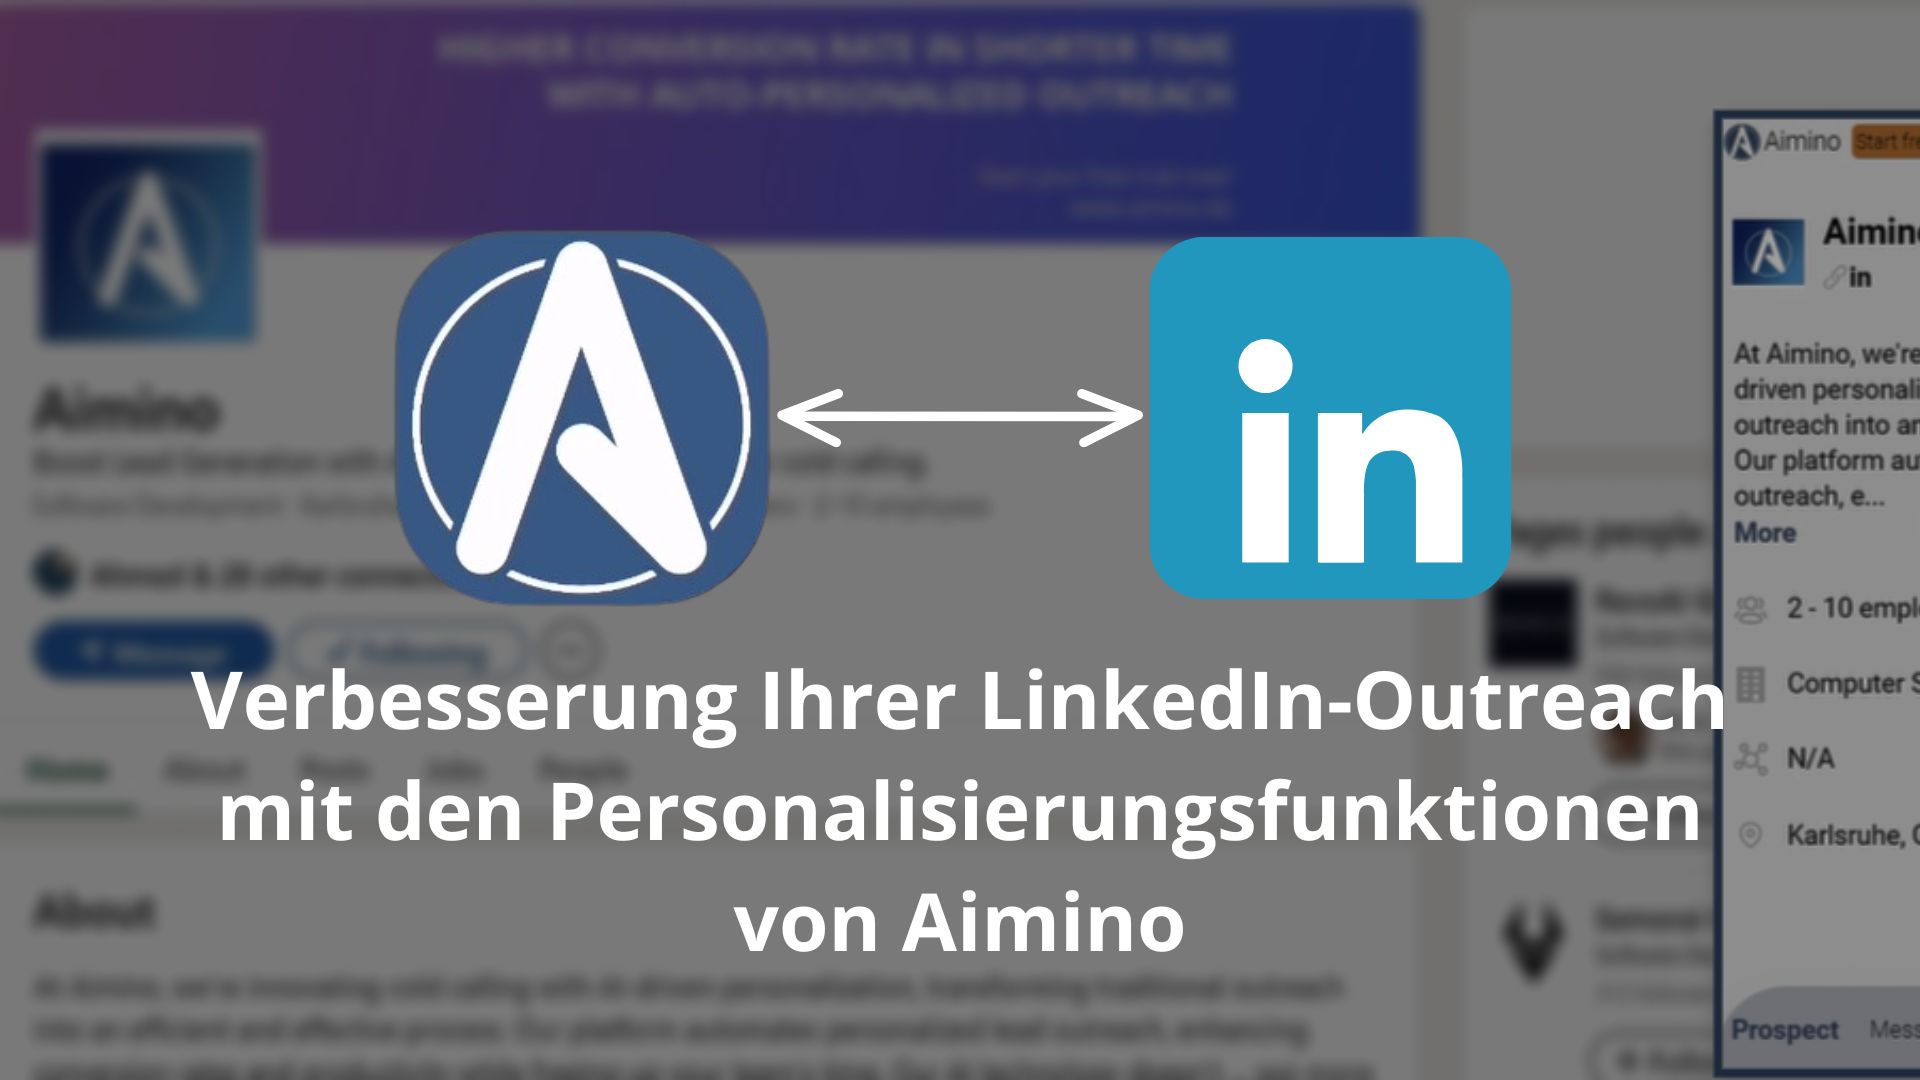 Verbesserung Ihrer LinkedIn-Outreach mit den Personalisierungsfunktionen von Aimino